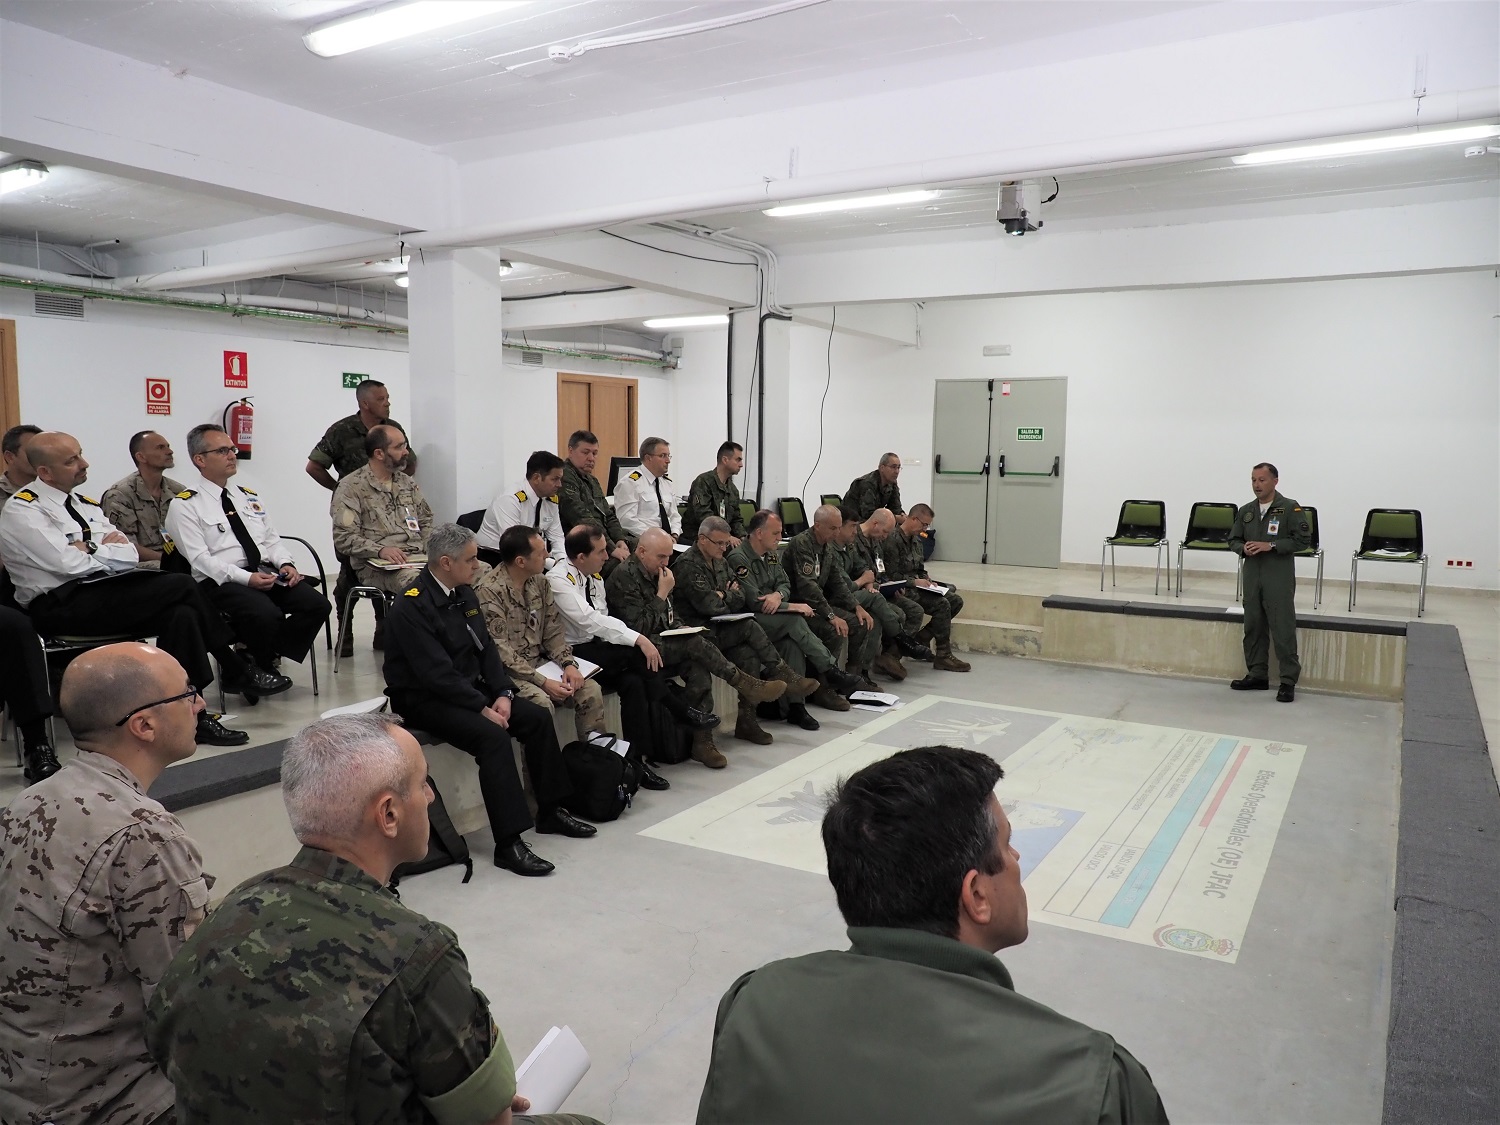 La División “San Marcial” acoge la dirección del ejercicio JFX MOPEX 18